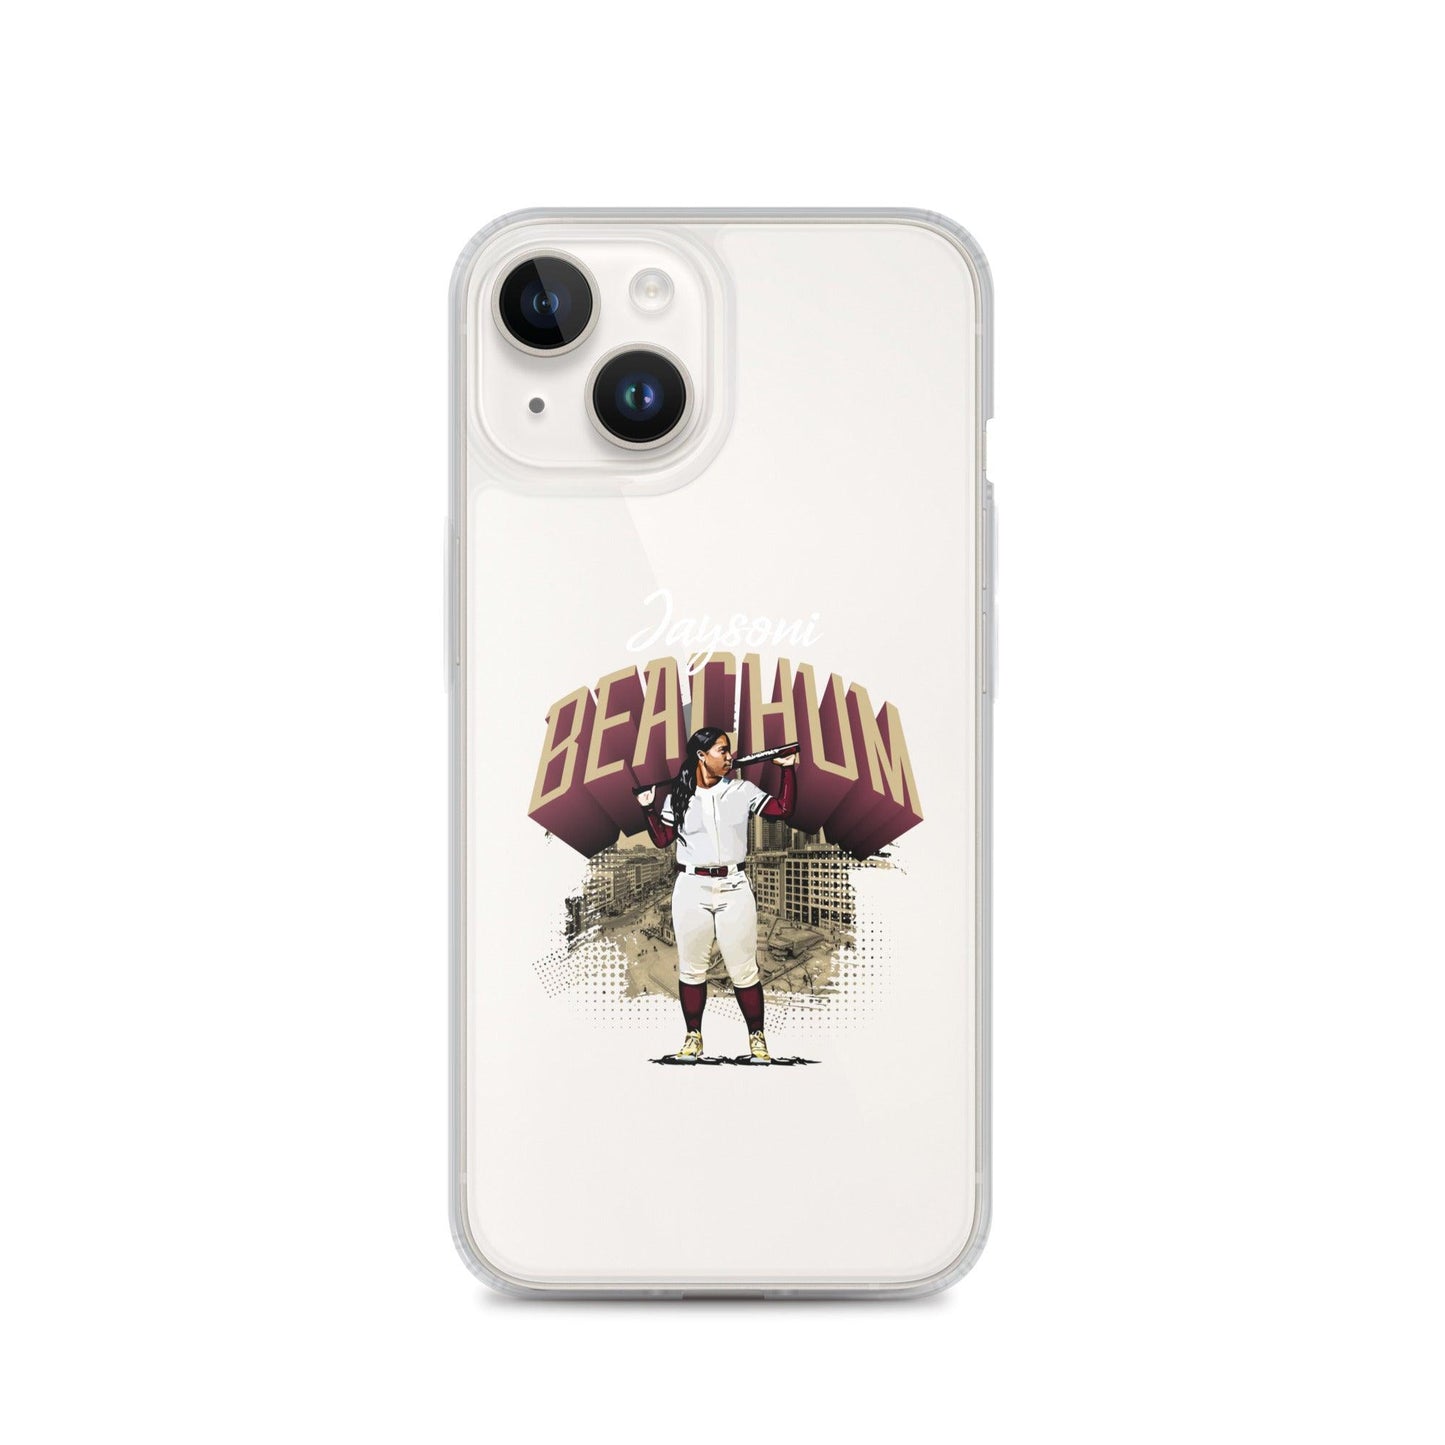 Jaysoni Beachum "Gameday" iPhone® - Fan Arch